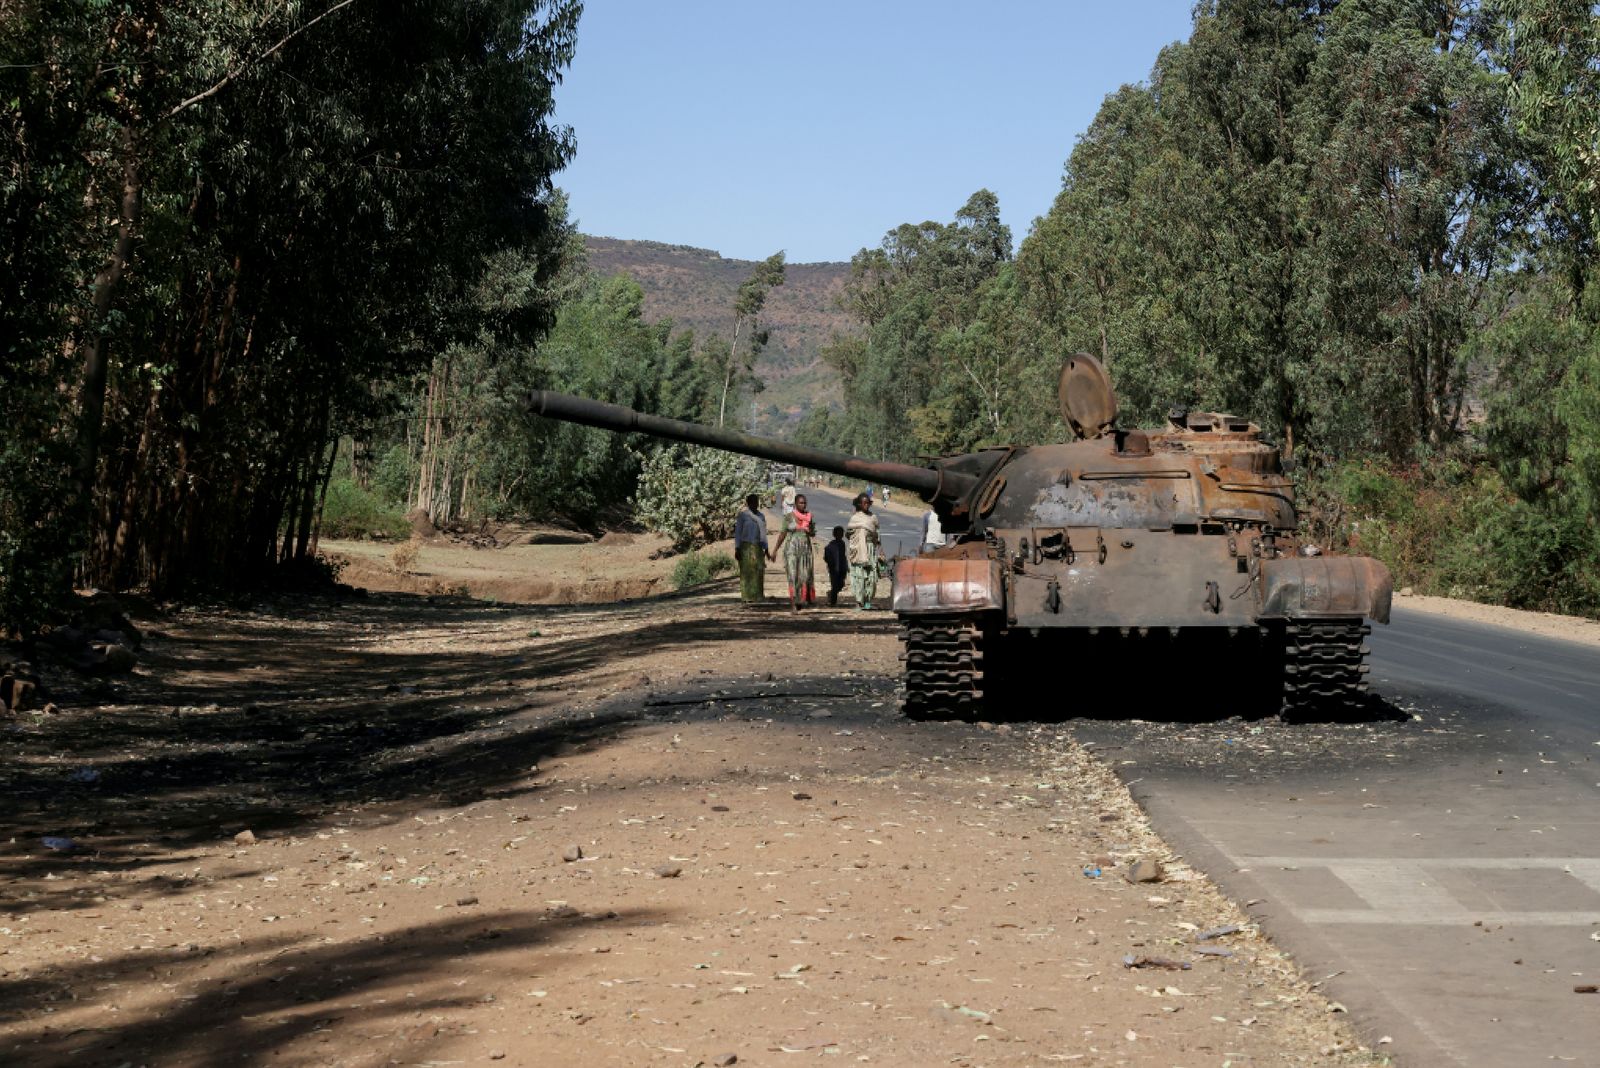 دبابة محترقة في إقليم تيغراي - 18 مارس 2021 - REUTERS